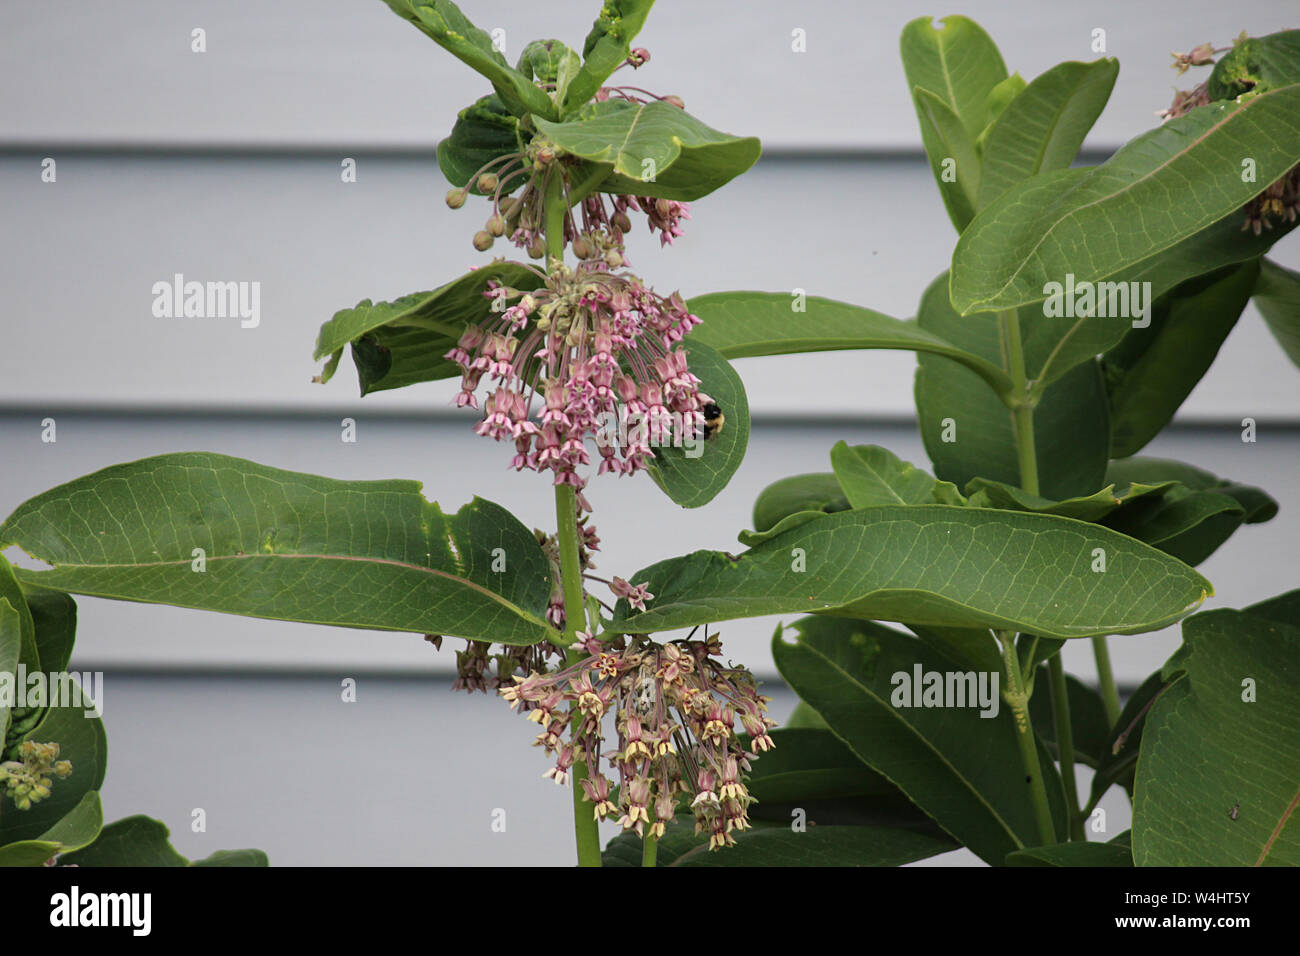 La collecte d'un bourdon du pollen des fleurs sur une plante Asclépiade commune dans le Wisconsin, USA Banque D'Images